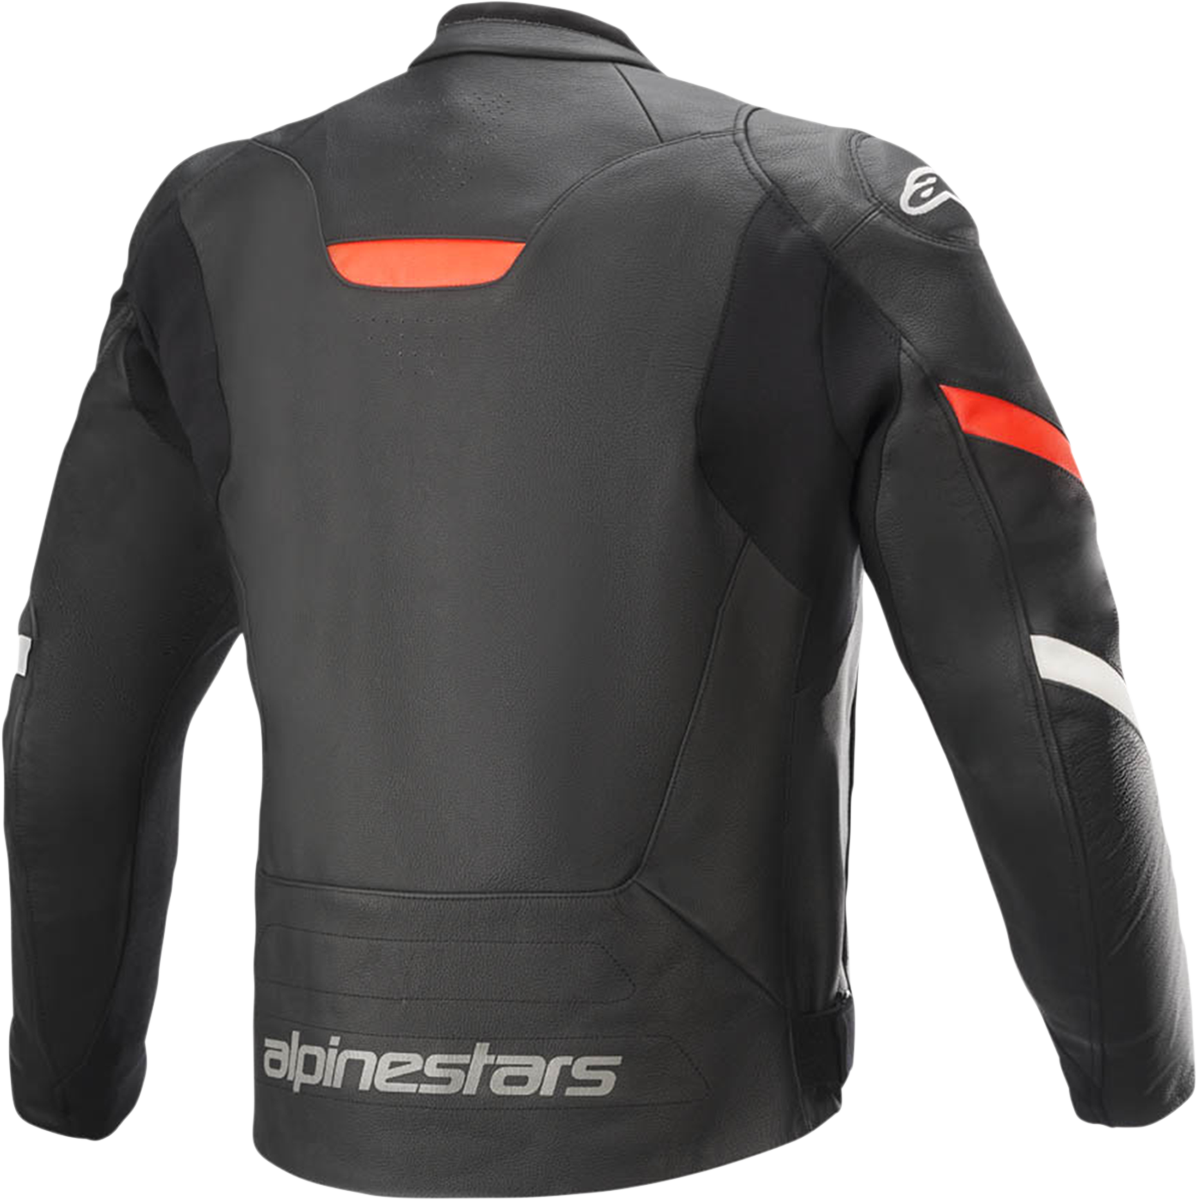 ALPINESTARS Faster v2 Leather Jacket - Black/Red - US 42 / EU 52 3103521-1030-52